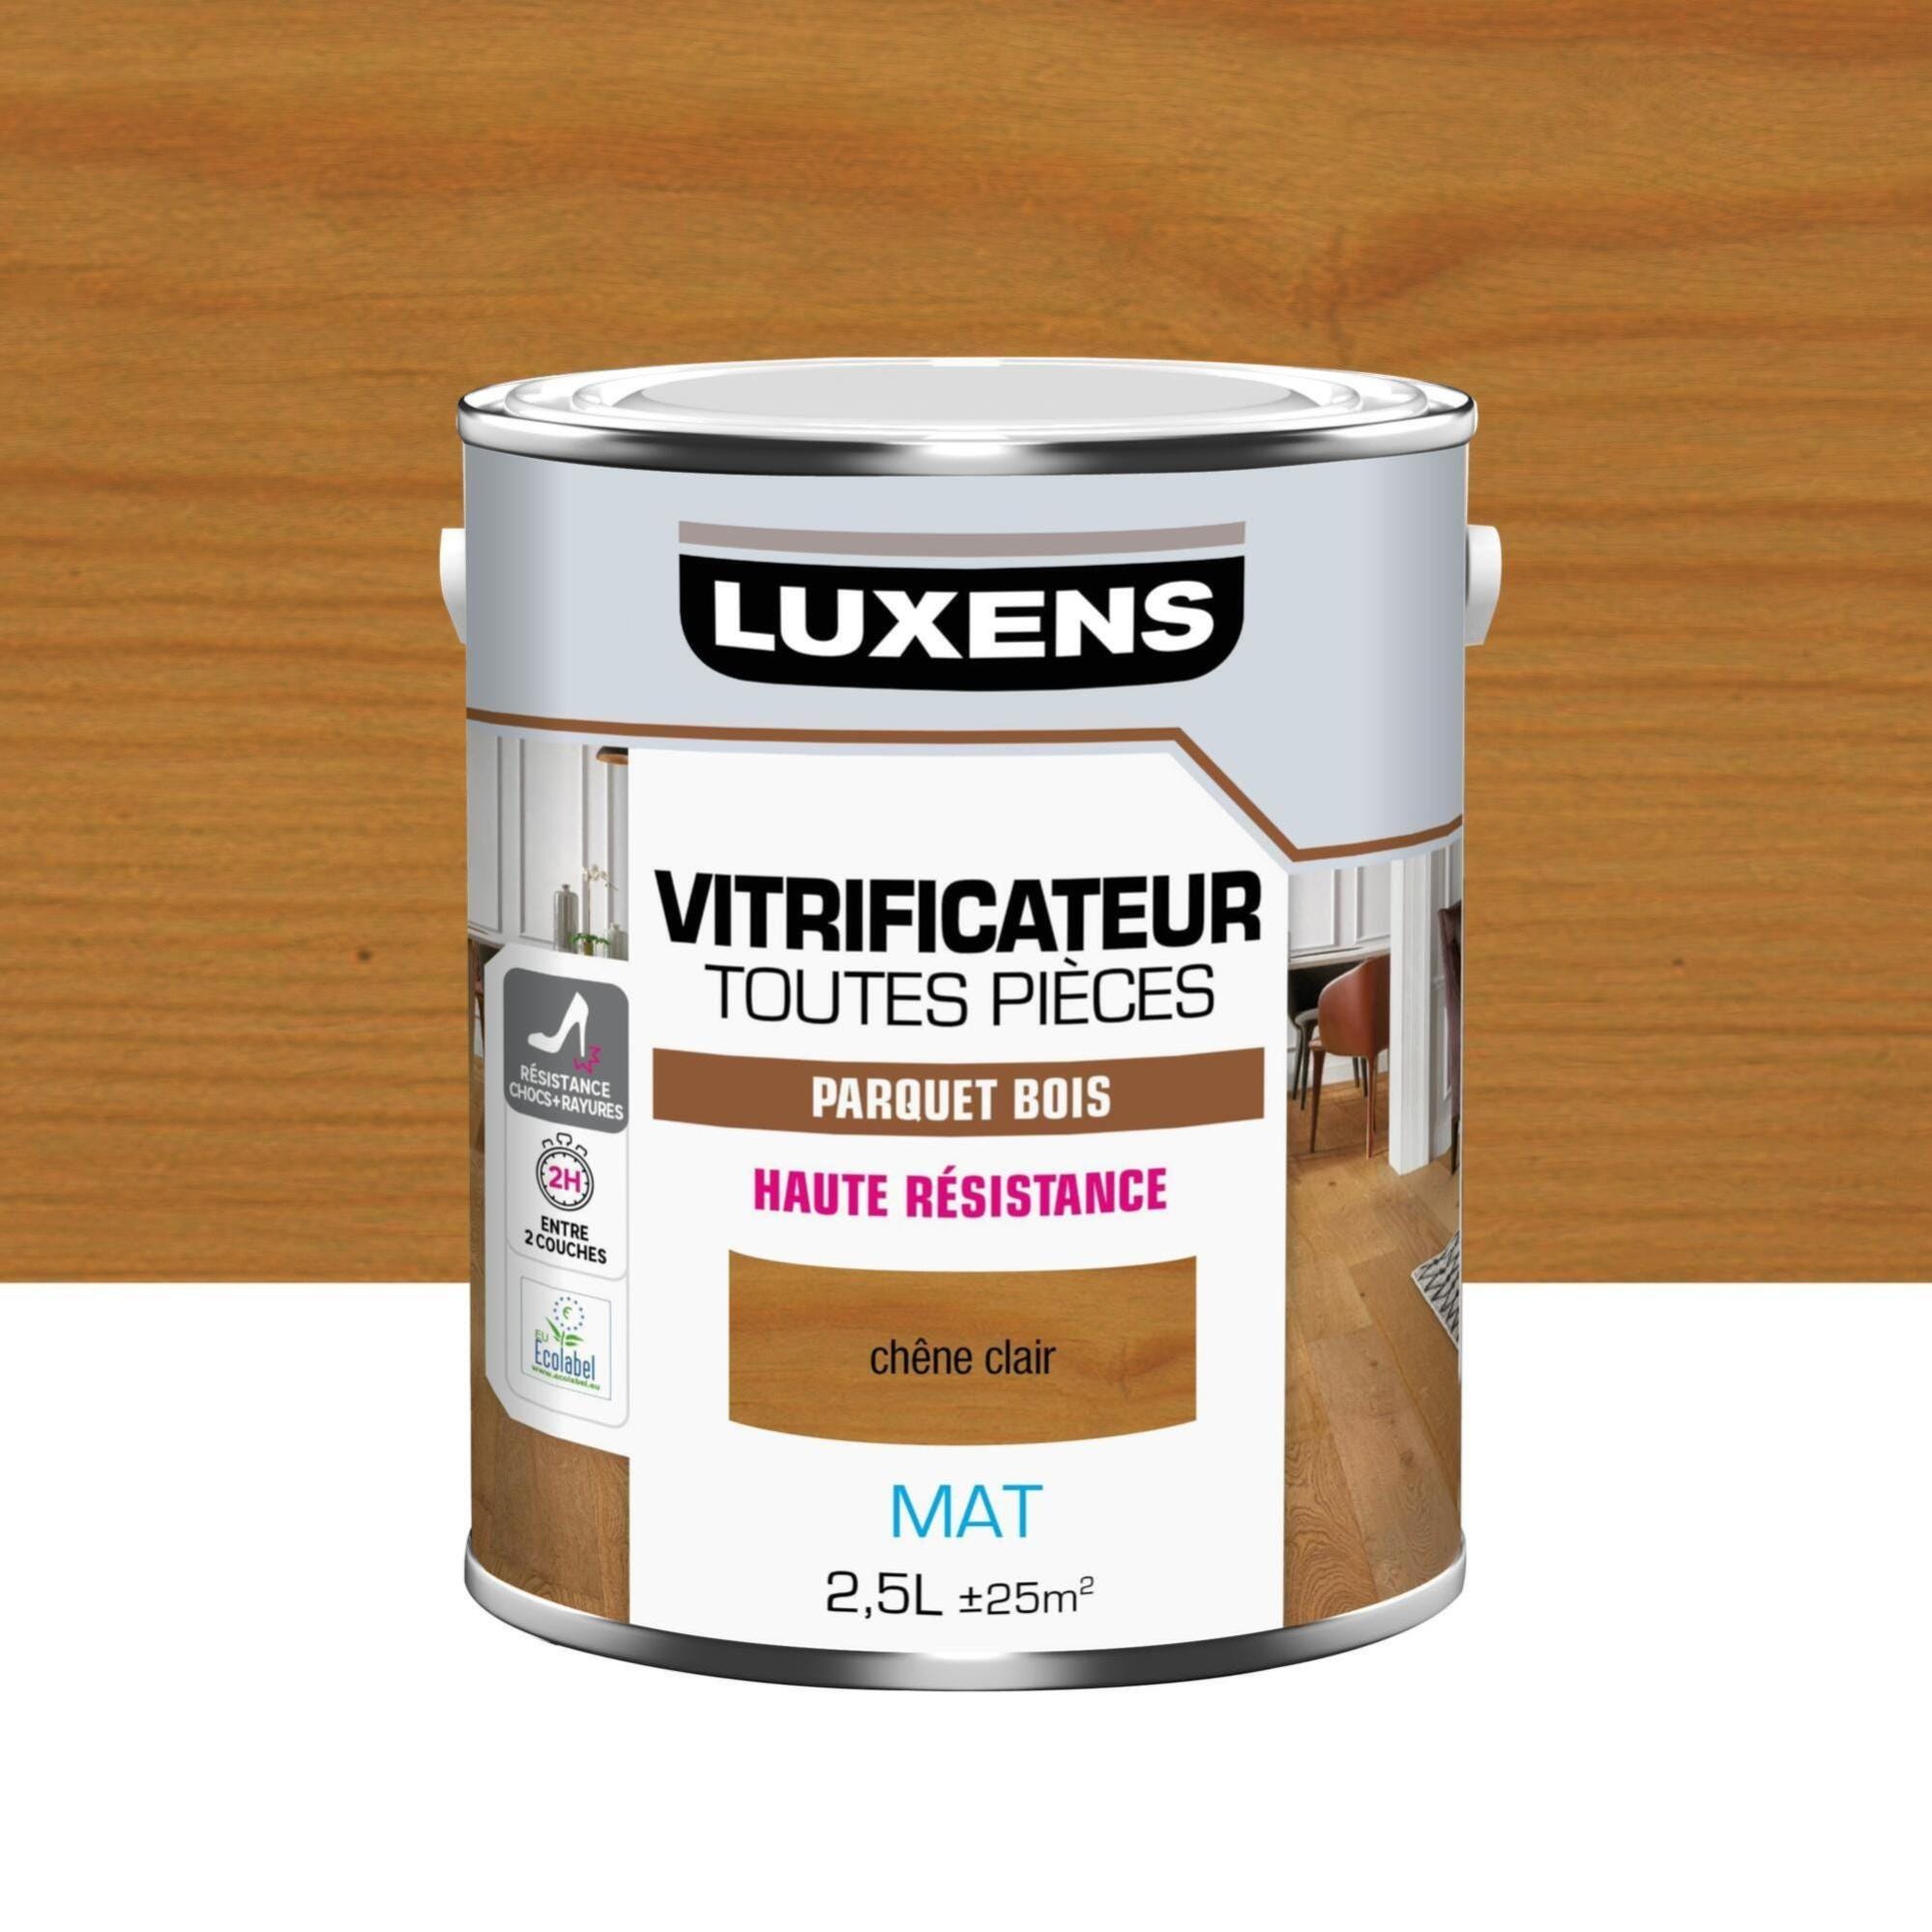 Vitrificateur parquet Haute résistance LUXENS, chêne clair mat 2.5 l